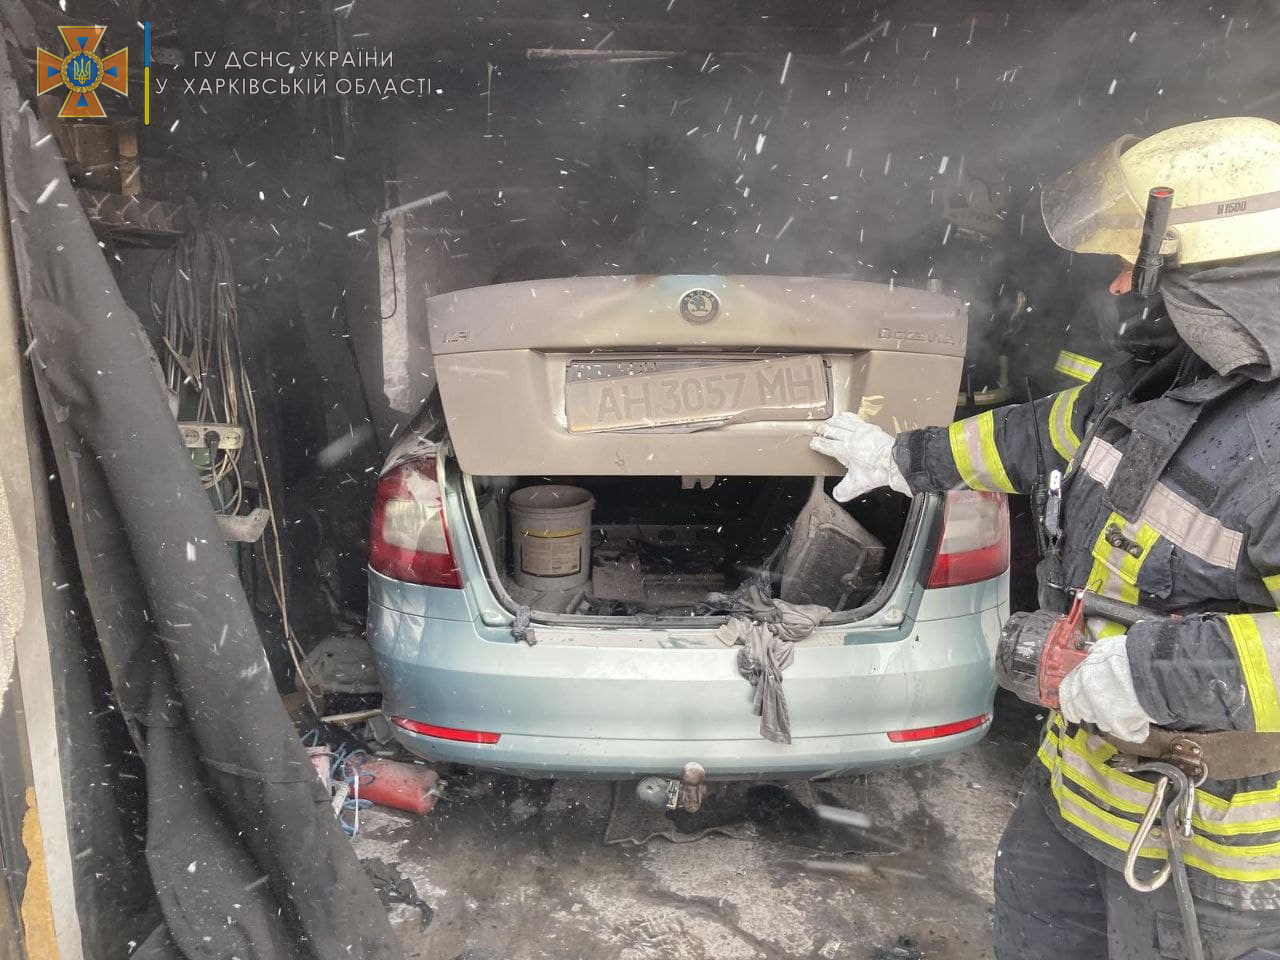 Пожар Харьков: горел автомобиль в гараже